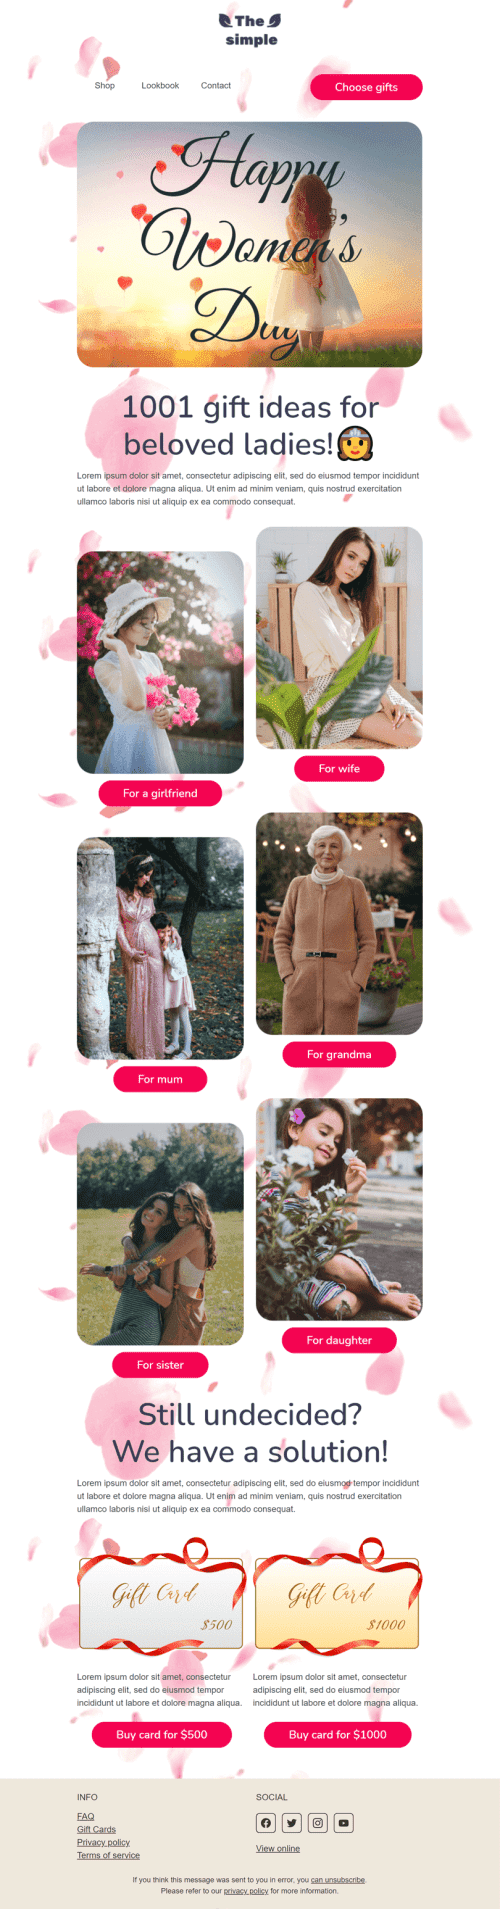 Plantilla de correo electrónico «1001 ideas de regalos para amadas damas» de Día de la Mujer para la industria de Moda Vista de móvil